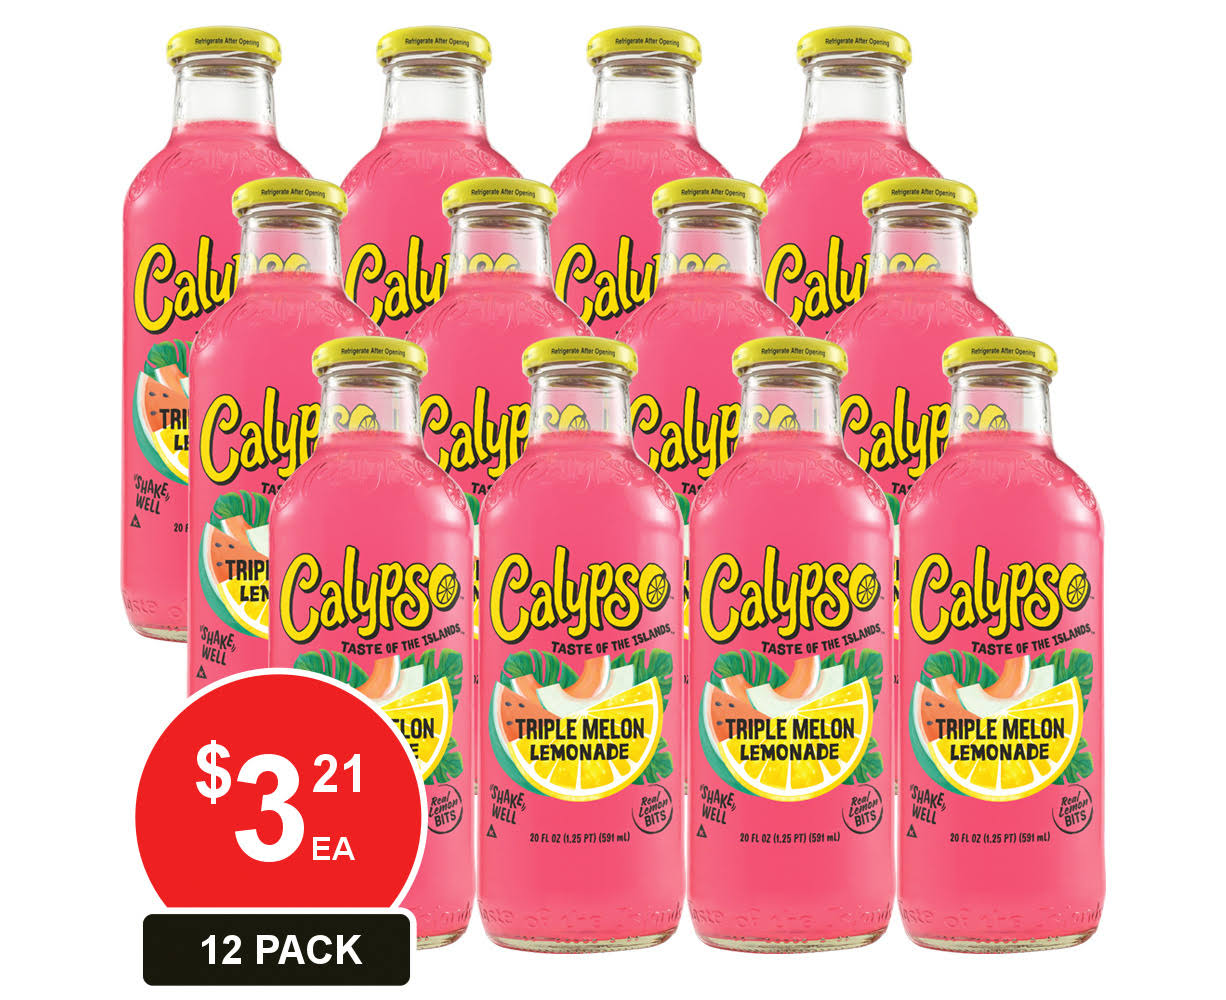 Calypso Triple Melon Lemonade - 20oz